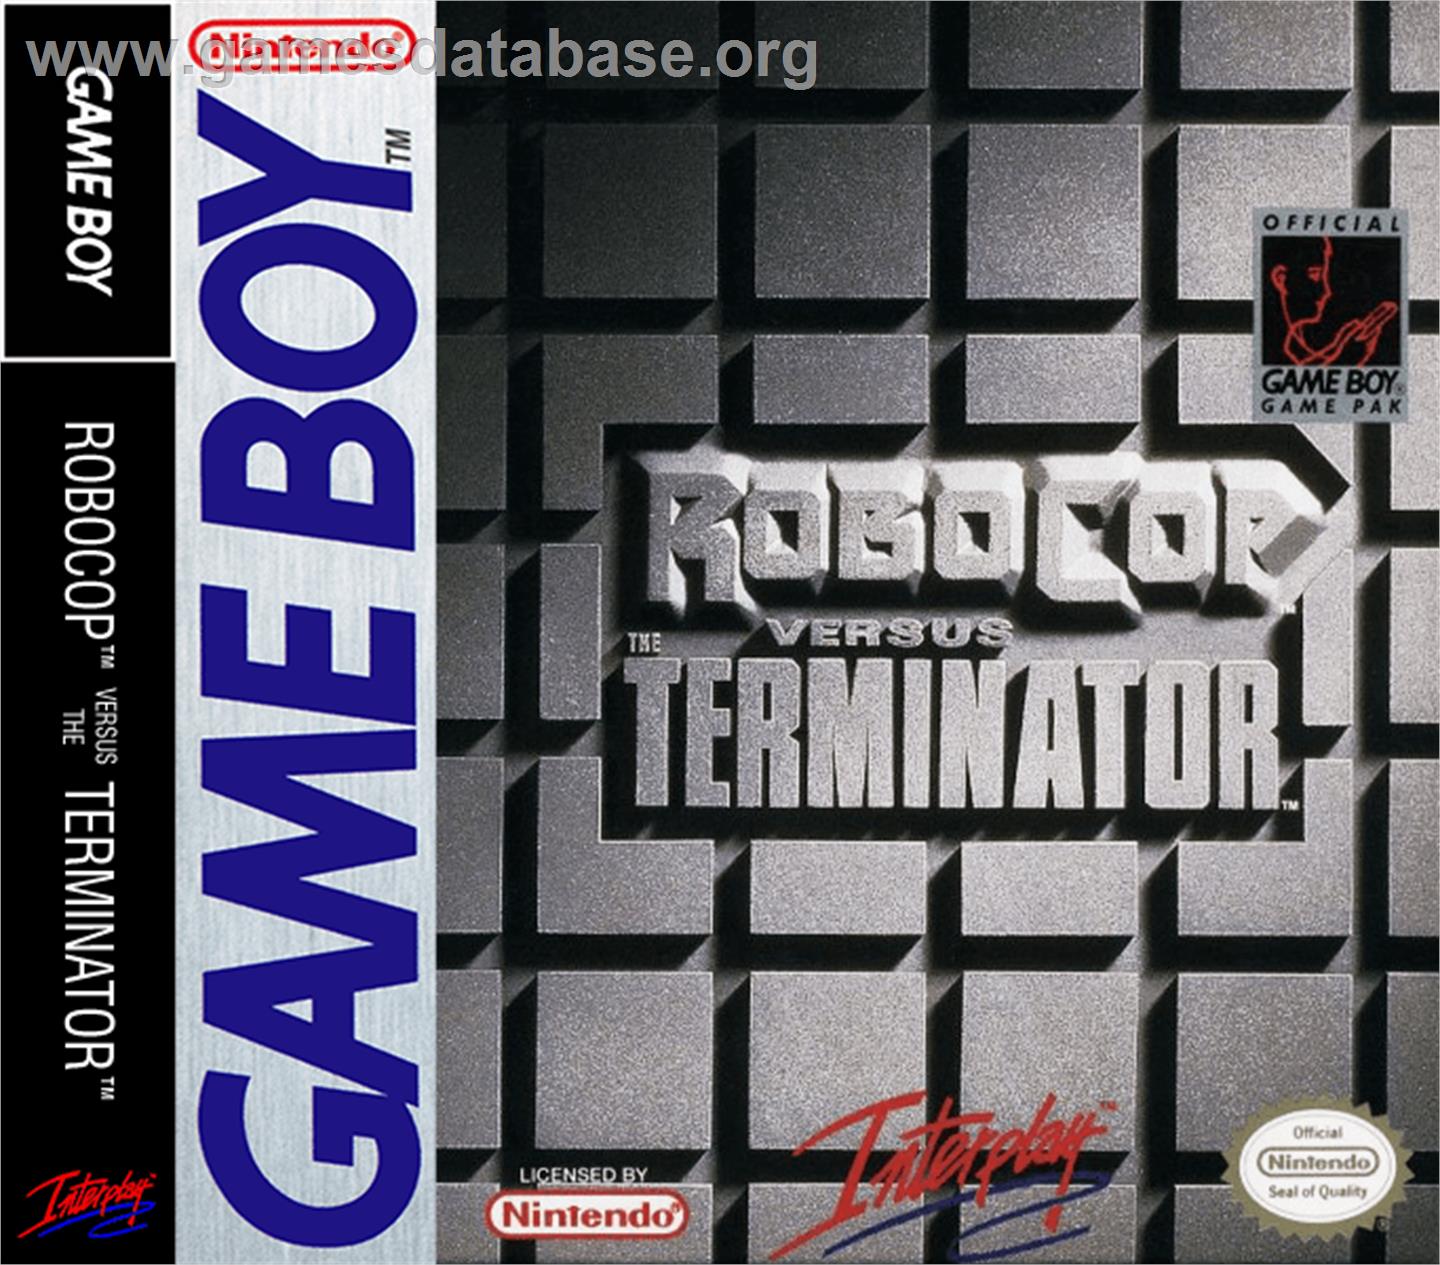 Robocop vs. the Terminator - Nintendo Game Boy - Artwork - Box